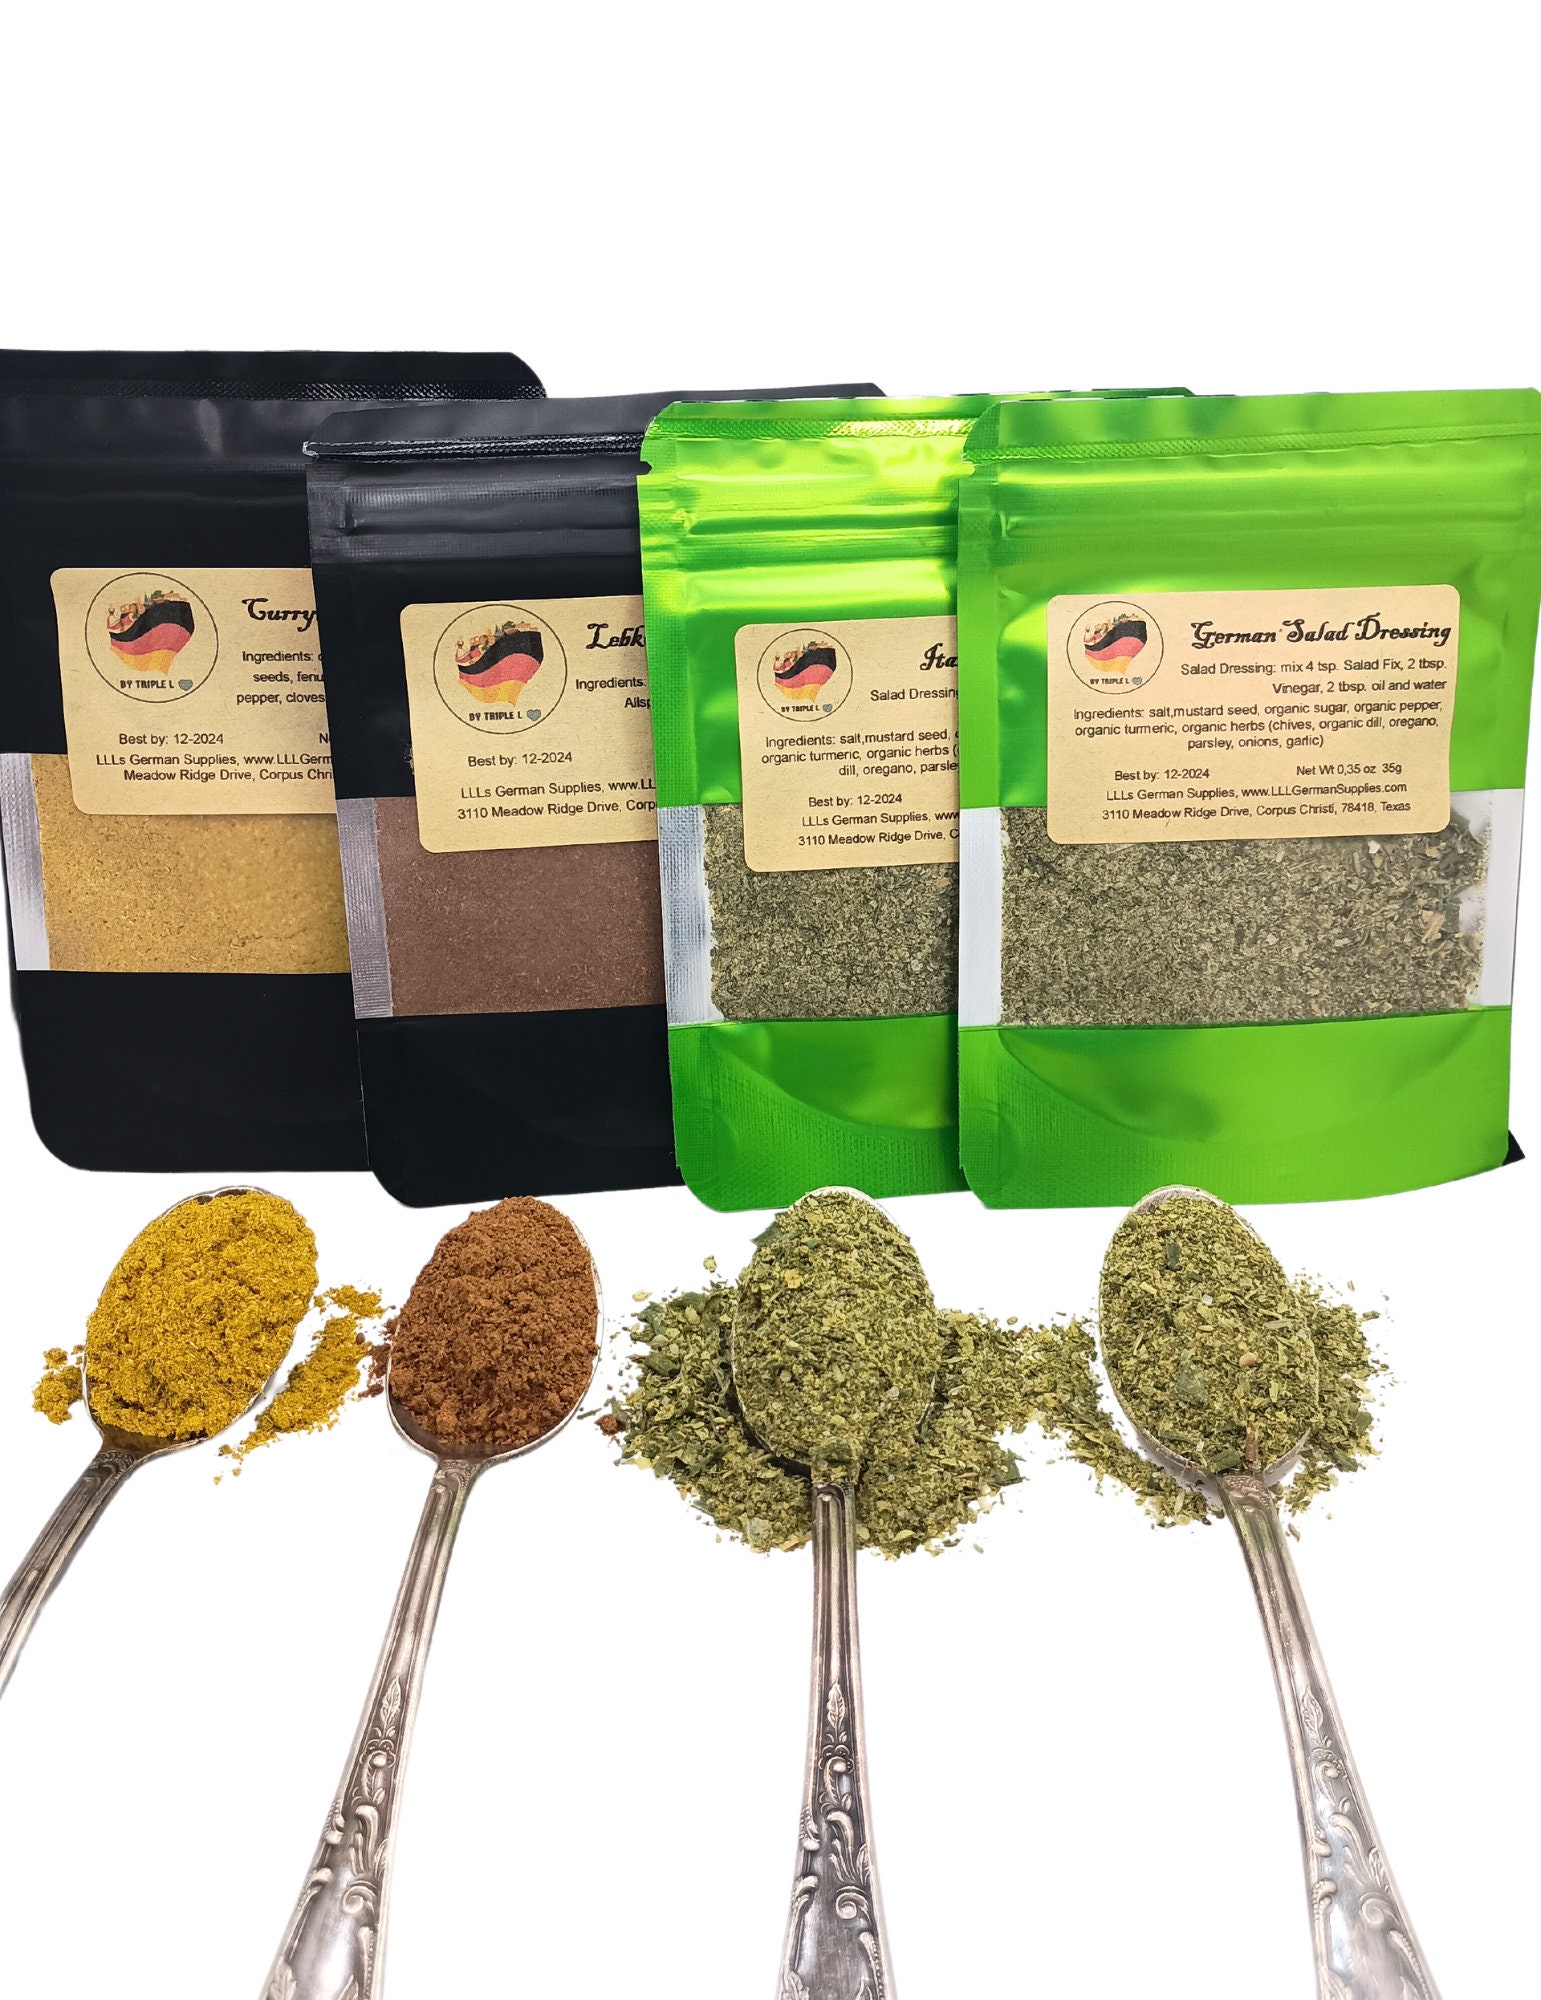 Smoked Seasonings Gift Set - 5 Organic Seasoning Samplers